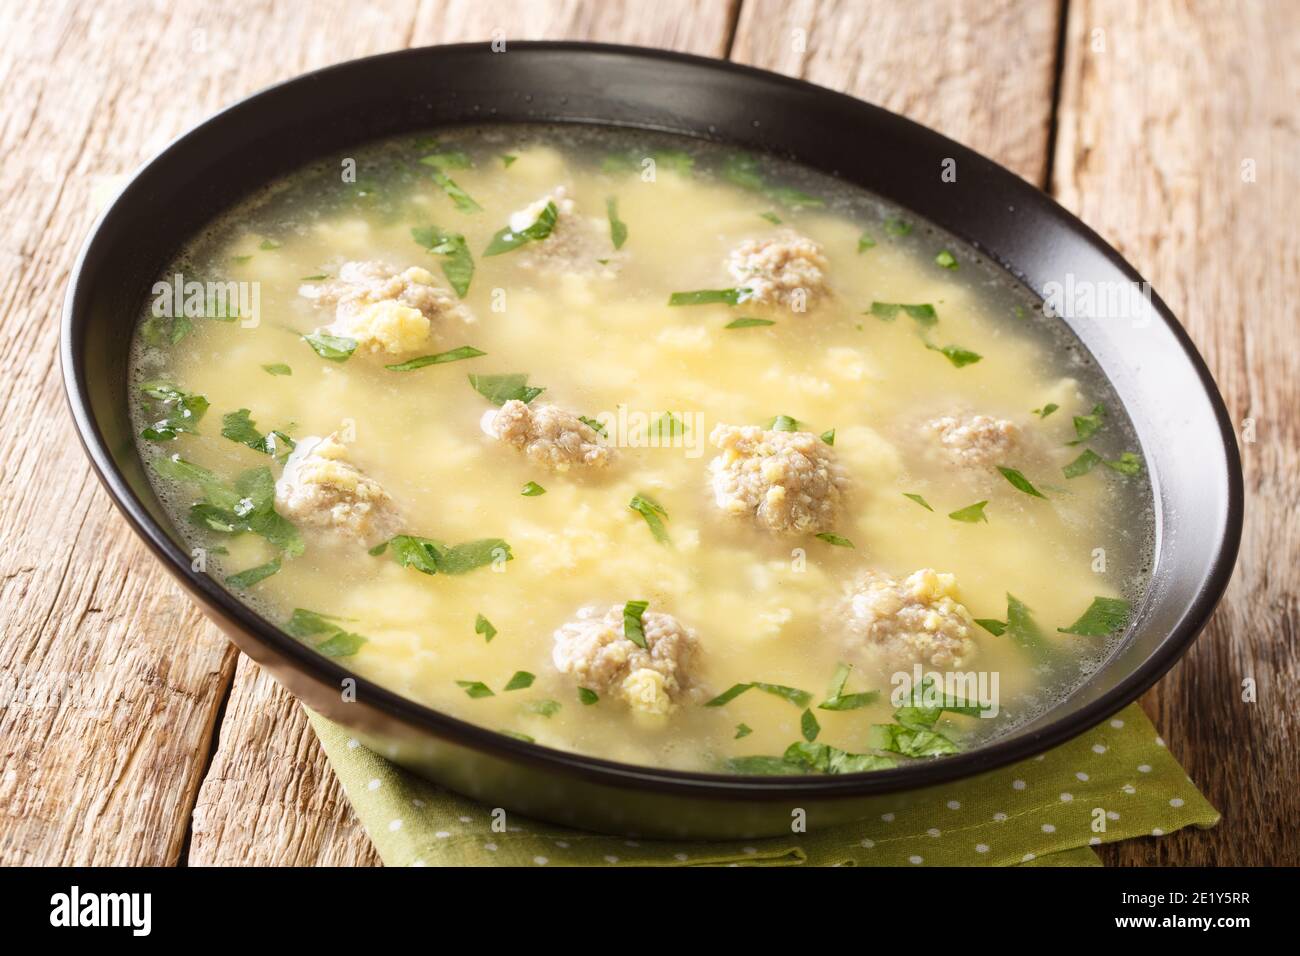 Ostern festliche italienische Suppe mit Fleischbällchen, Eier, Käse close-up in einer Schüssel auf dem Tisch. Horizontal Stockfoto